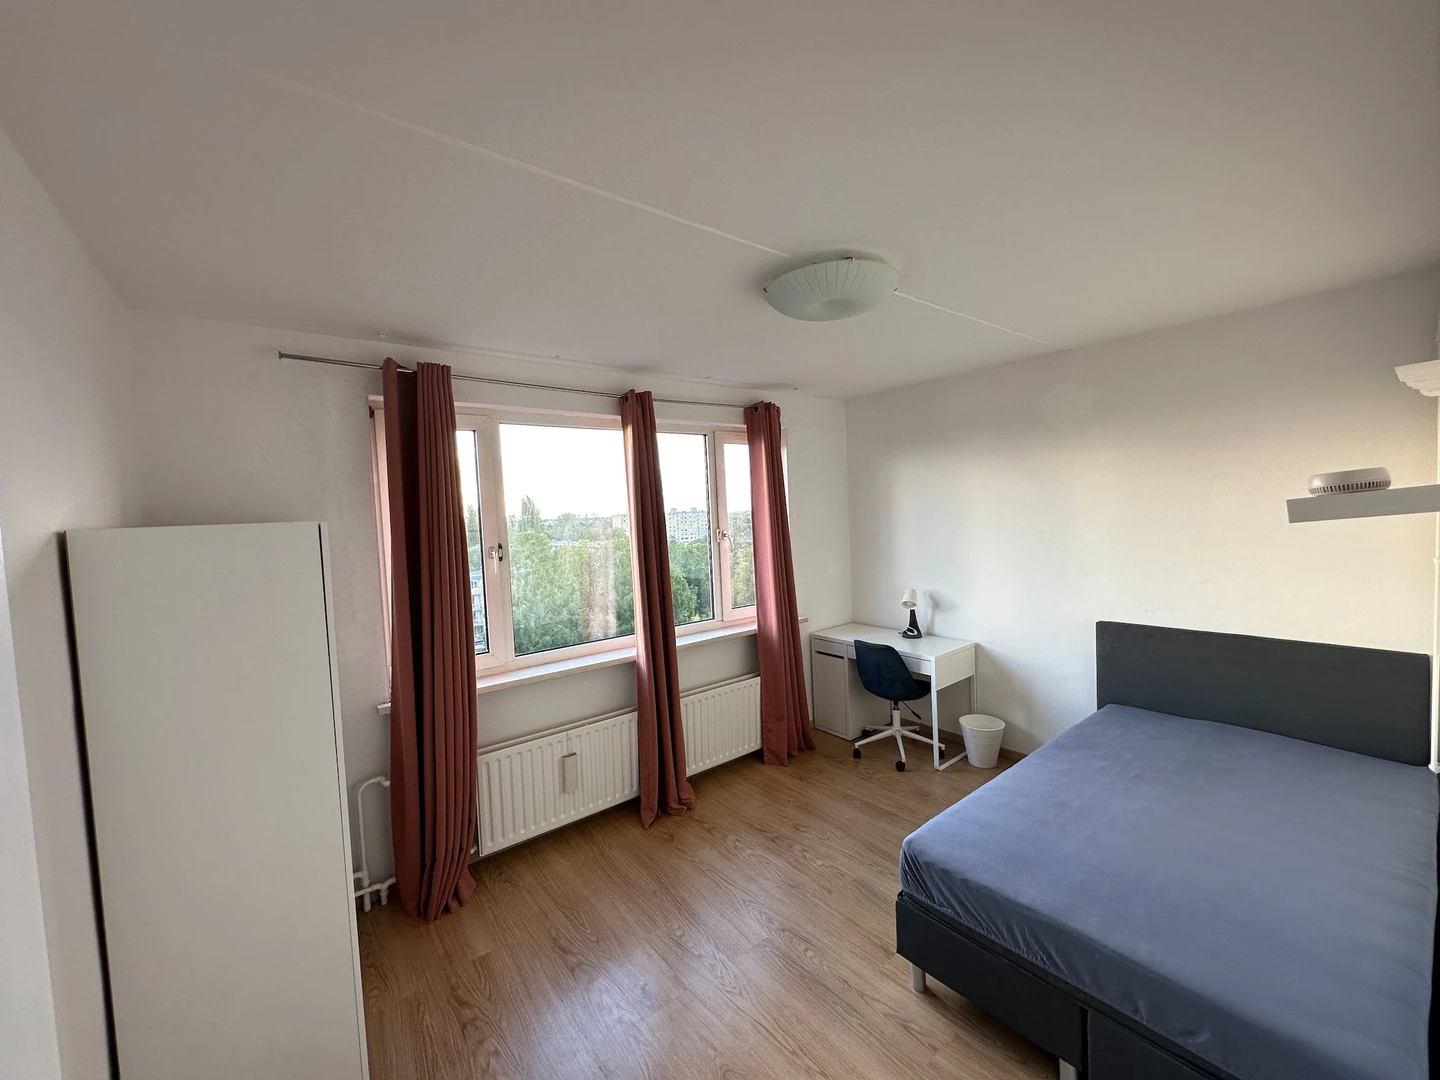 Monatliche Vermietung von Zimmern in Leiden